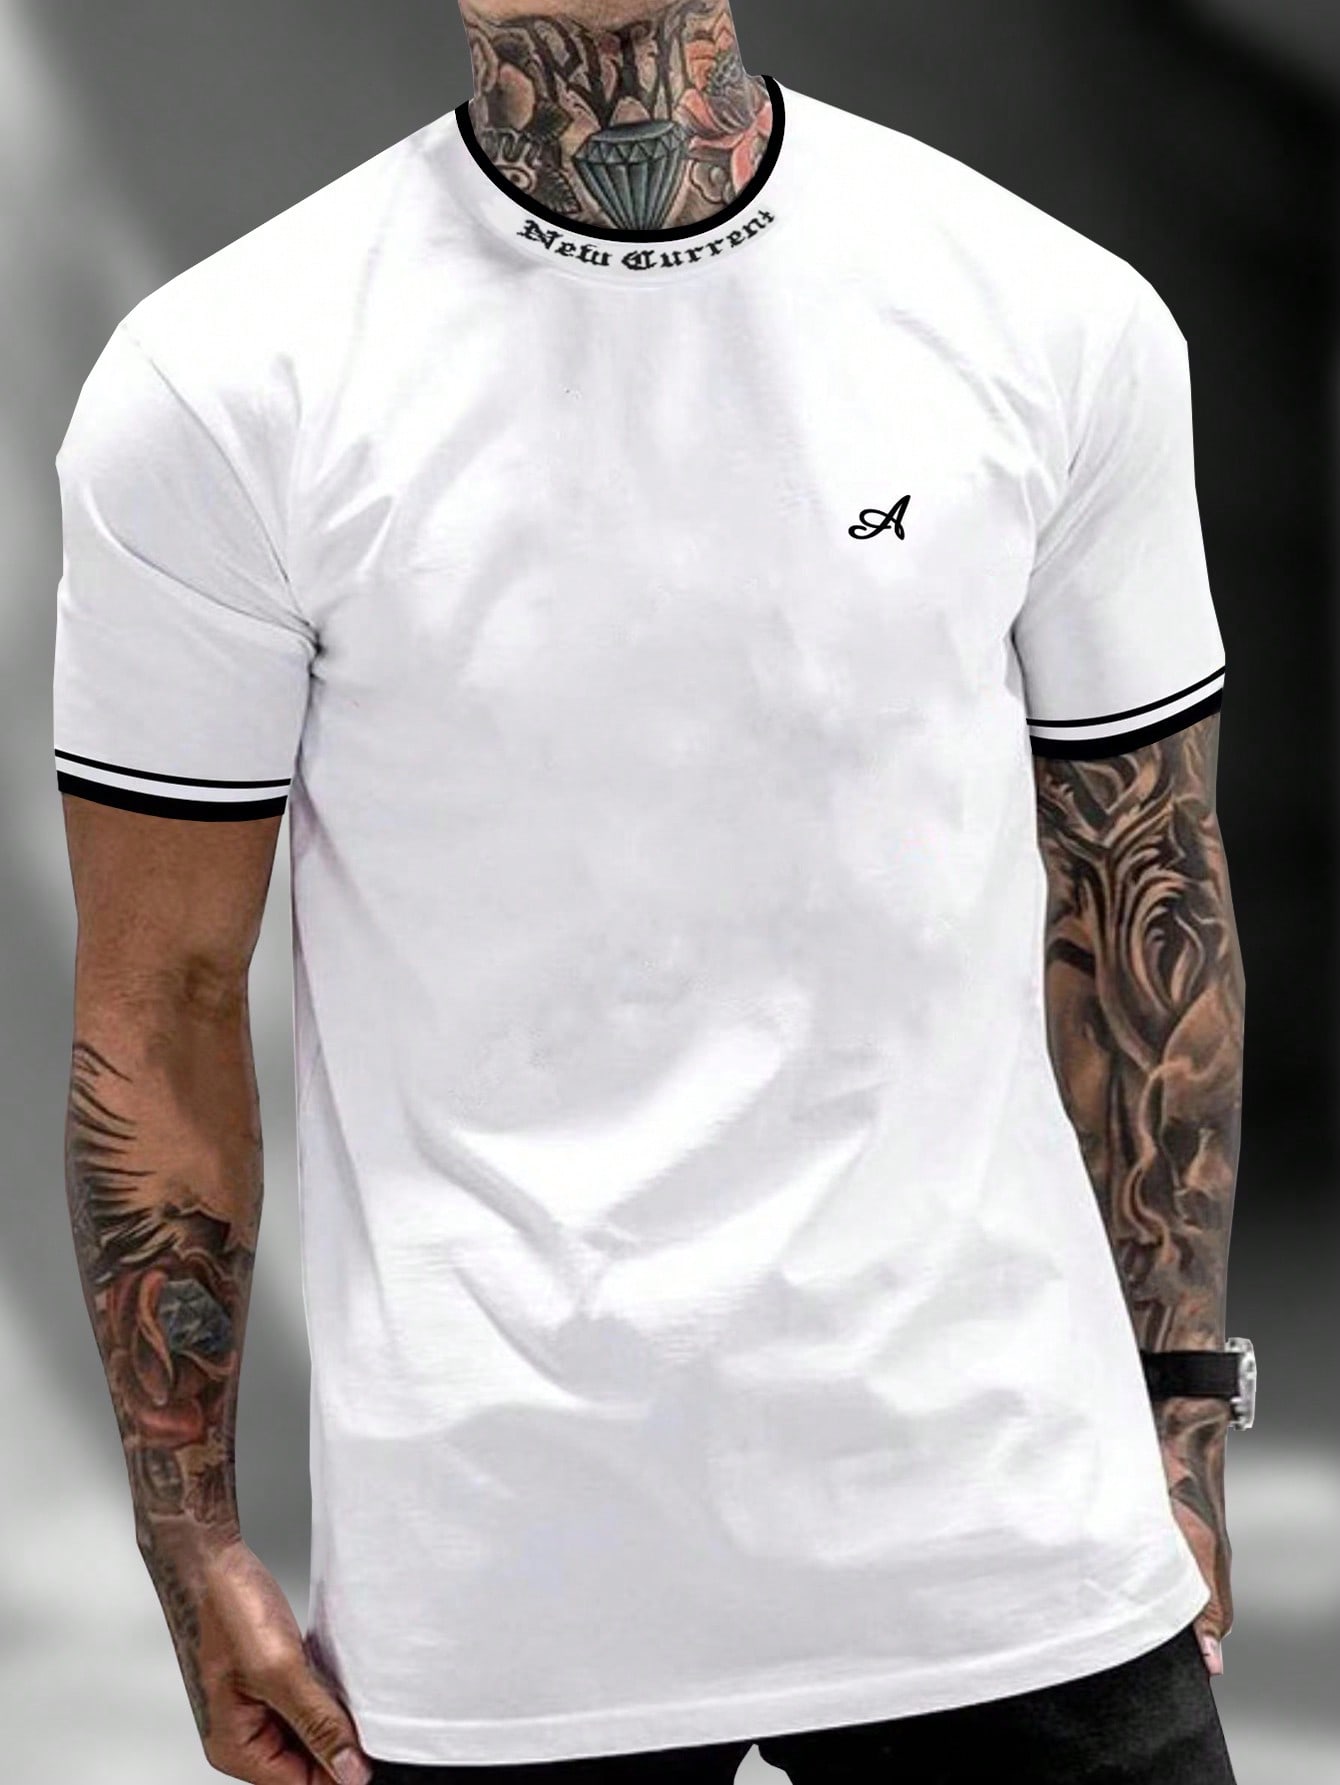 Мужская футболка с контрастным буквенным принтом Manfinity Homme и декоративной окантовкой, белый футболка мужская с контрастной отделкой madison 170 оранжевый белый размер xl